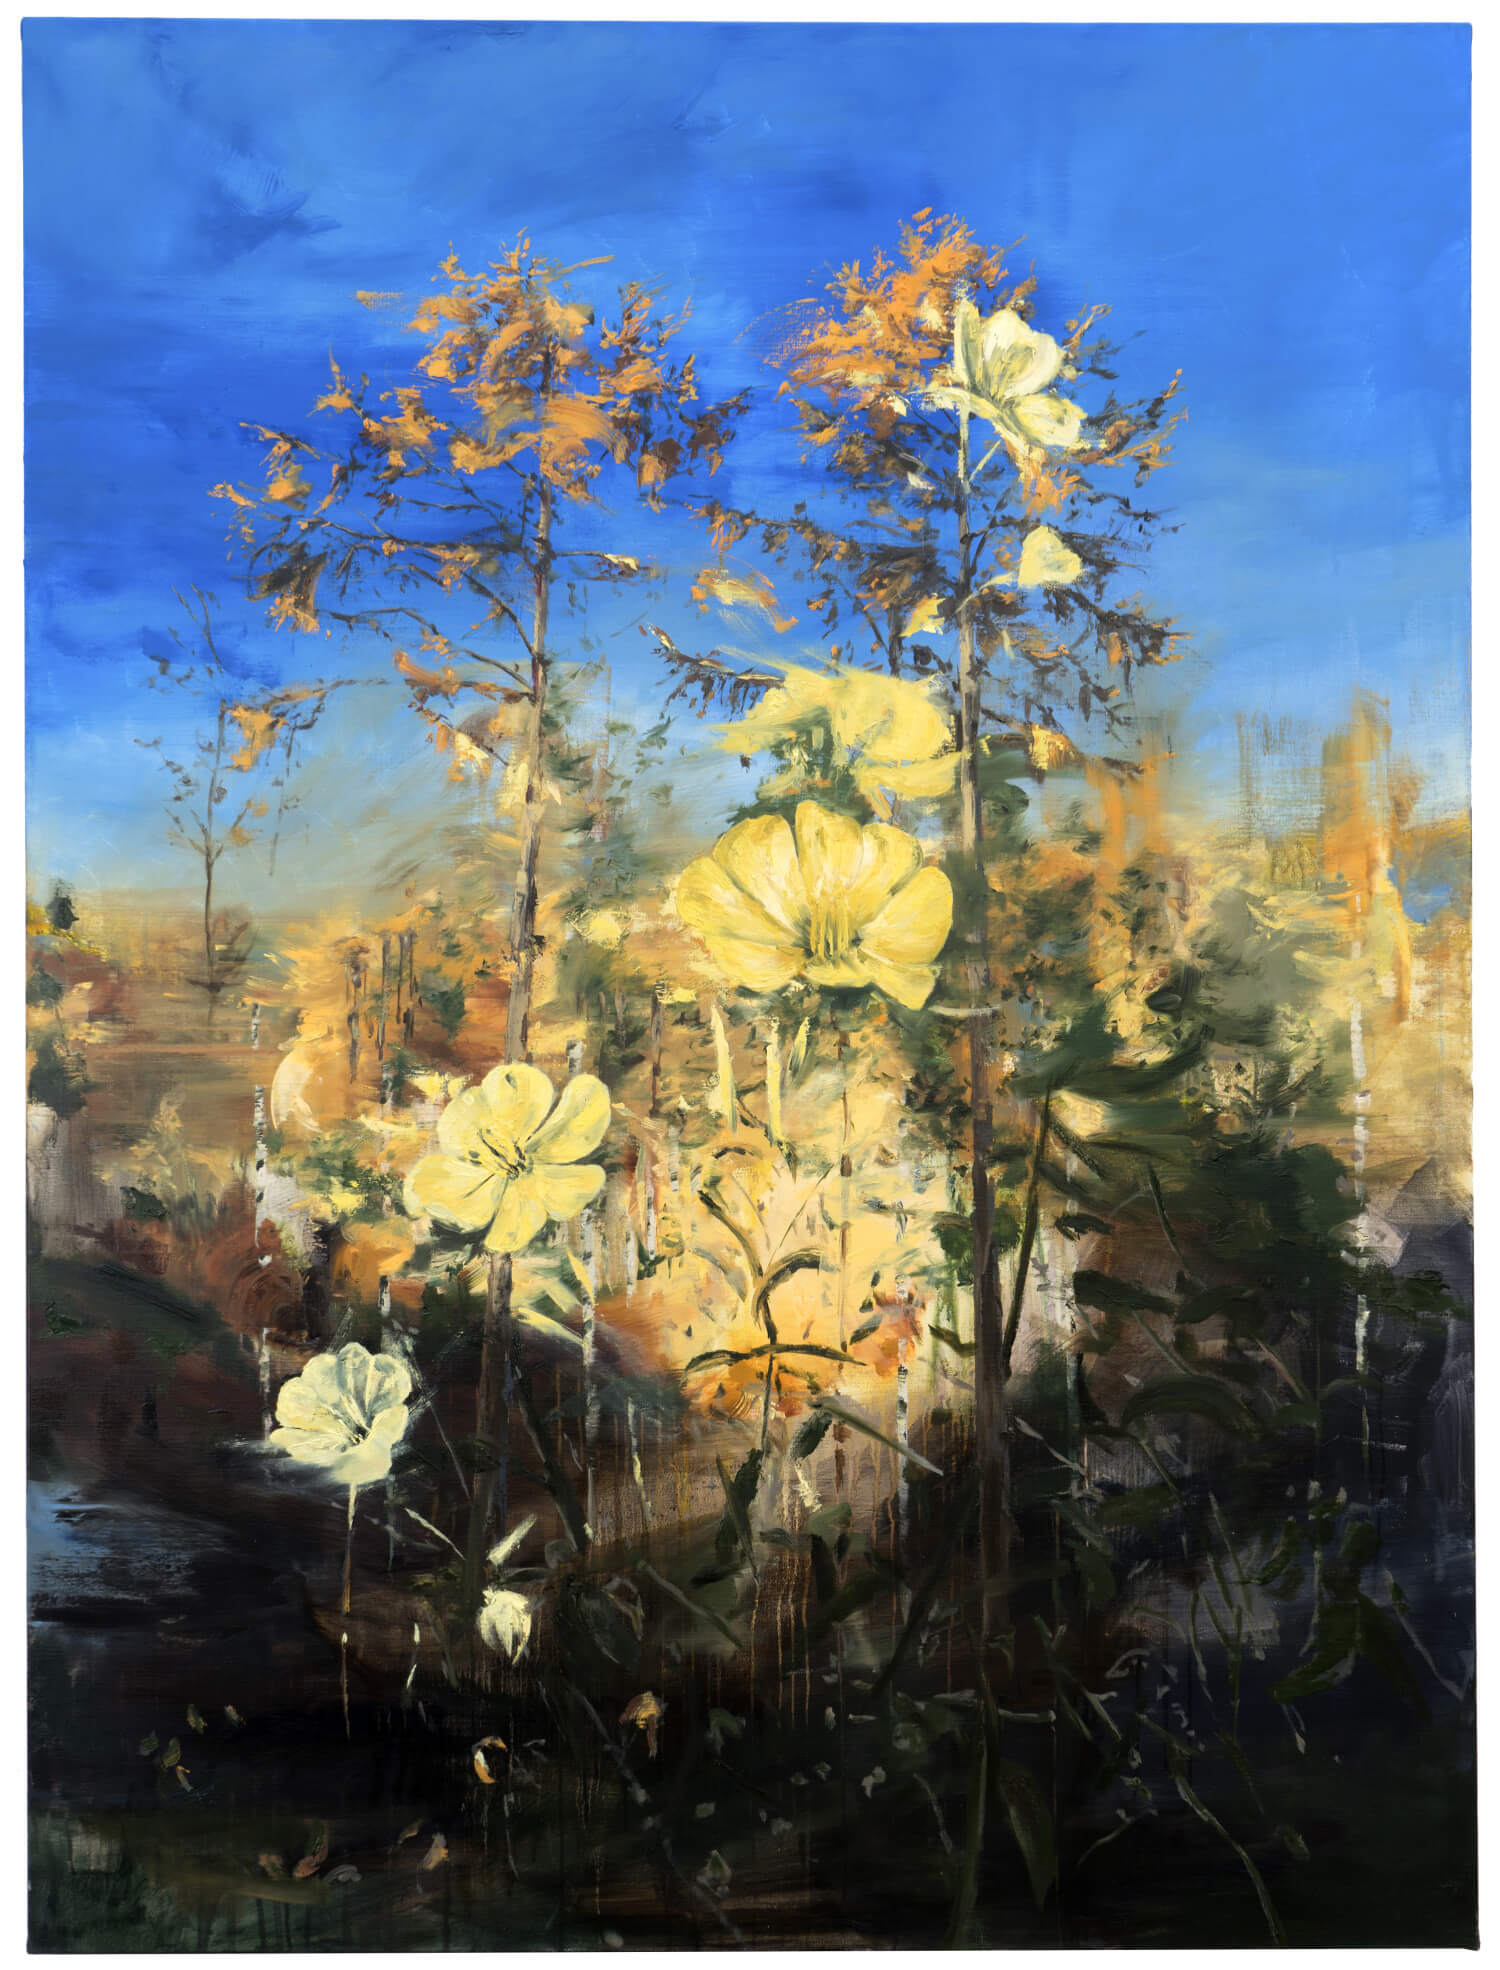 joris vanpoucke, forestprimrose, painting, dmw gallery